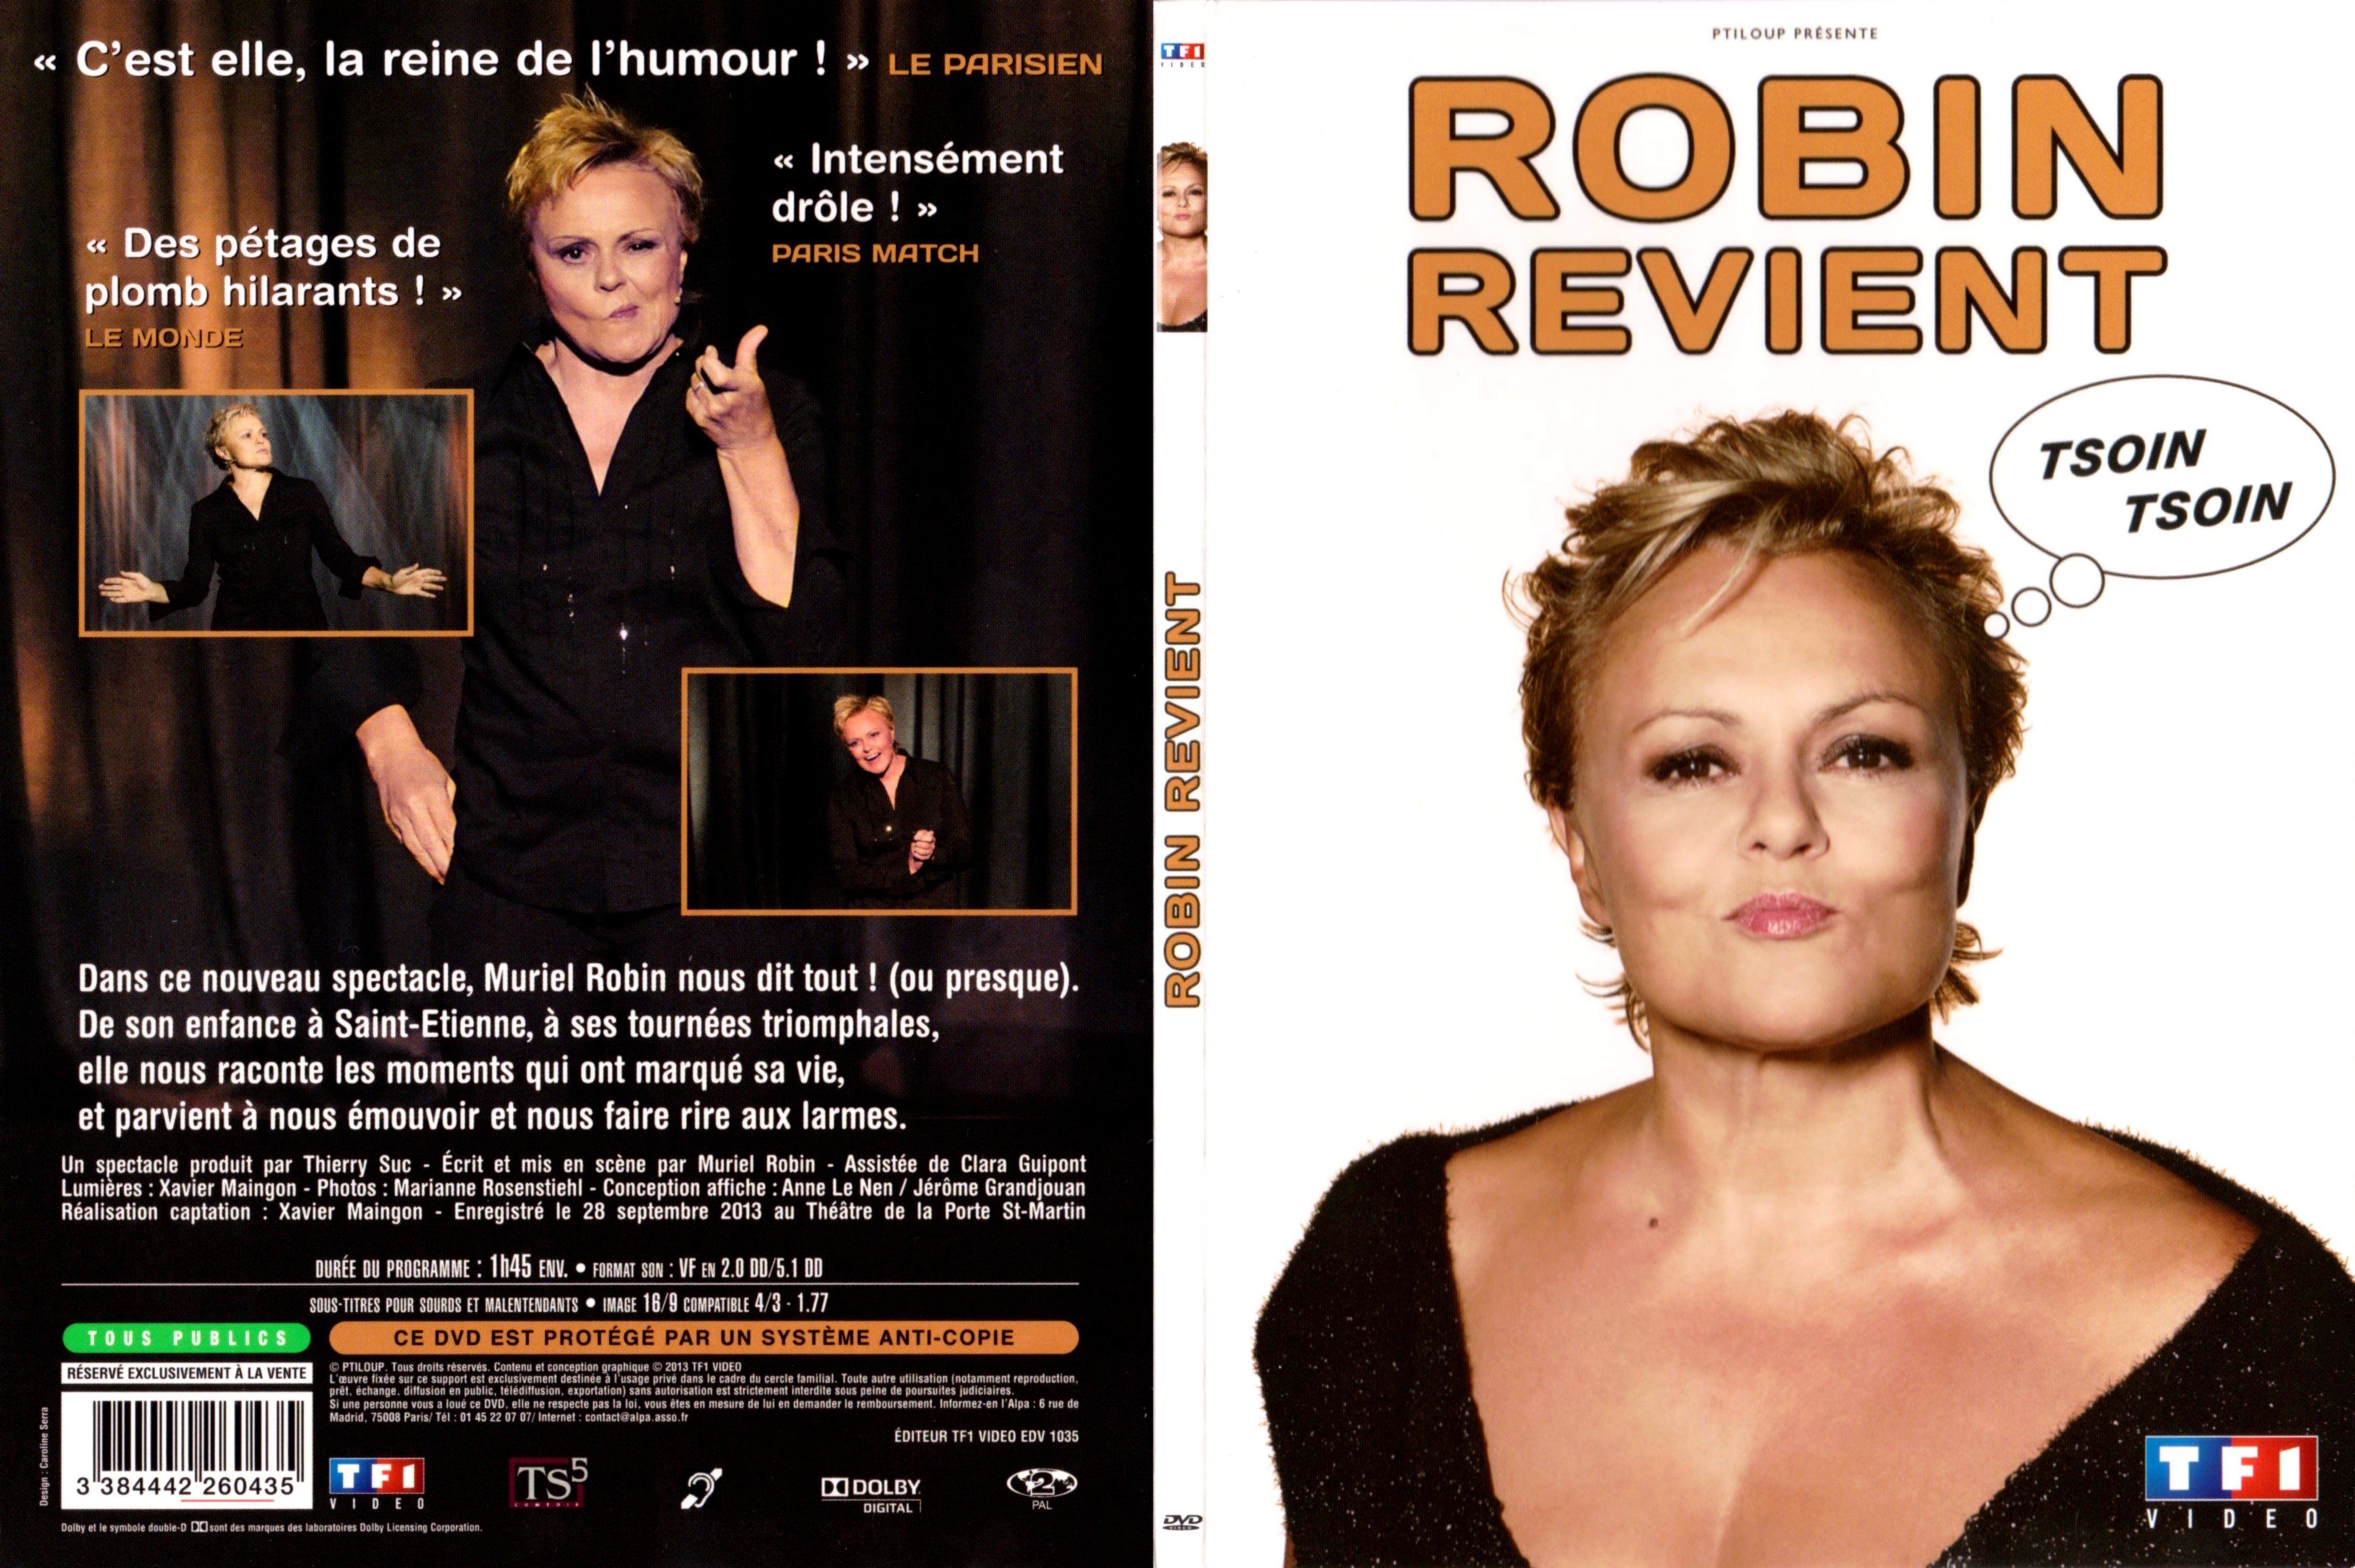 Jaquette DVD Muriel Robin revient tsoin tsoin v2